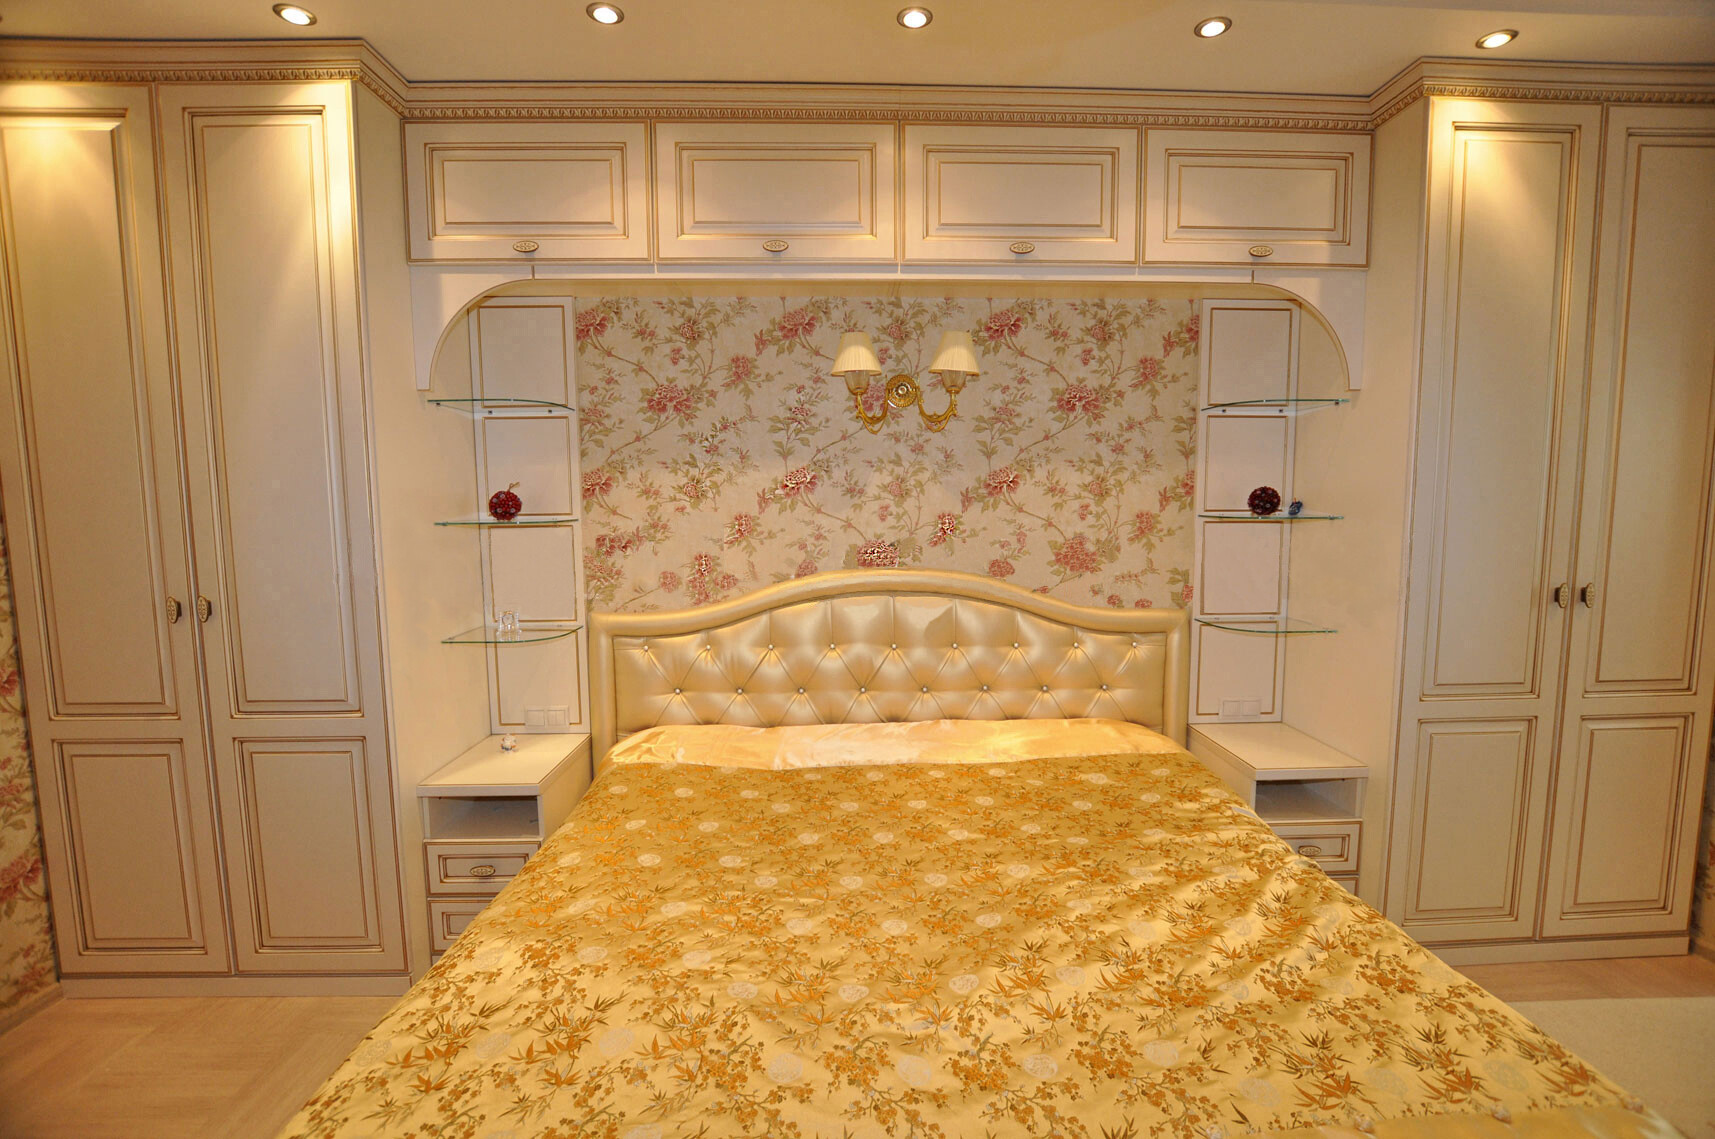 Классические спальни - 100 фото интерьера спальни в классическом стиле